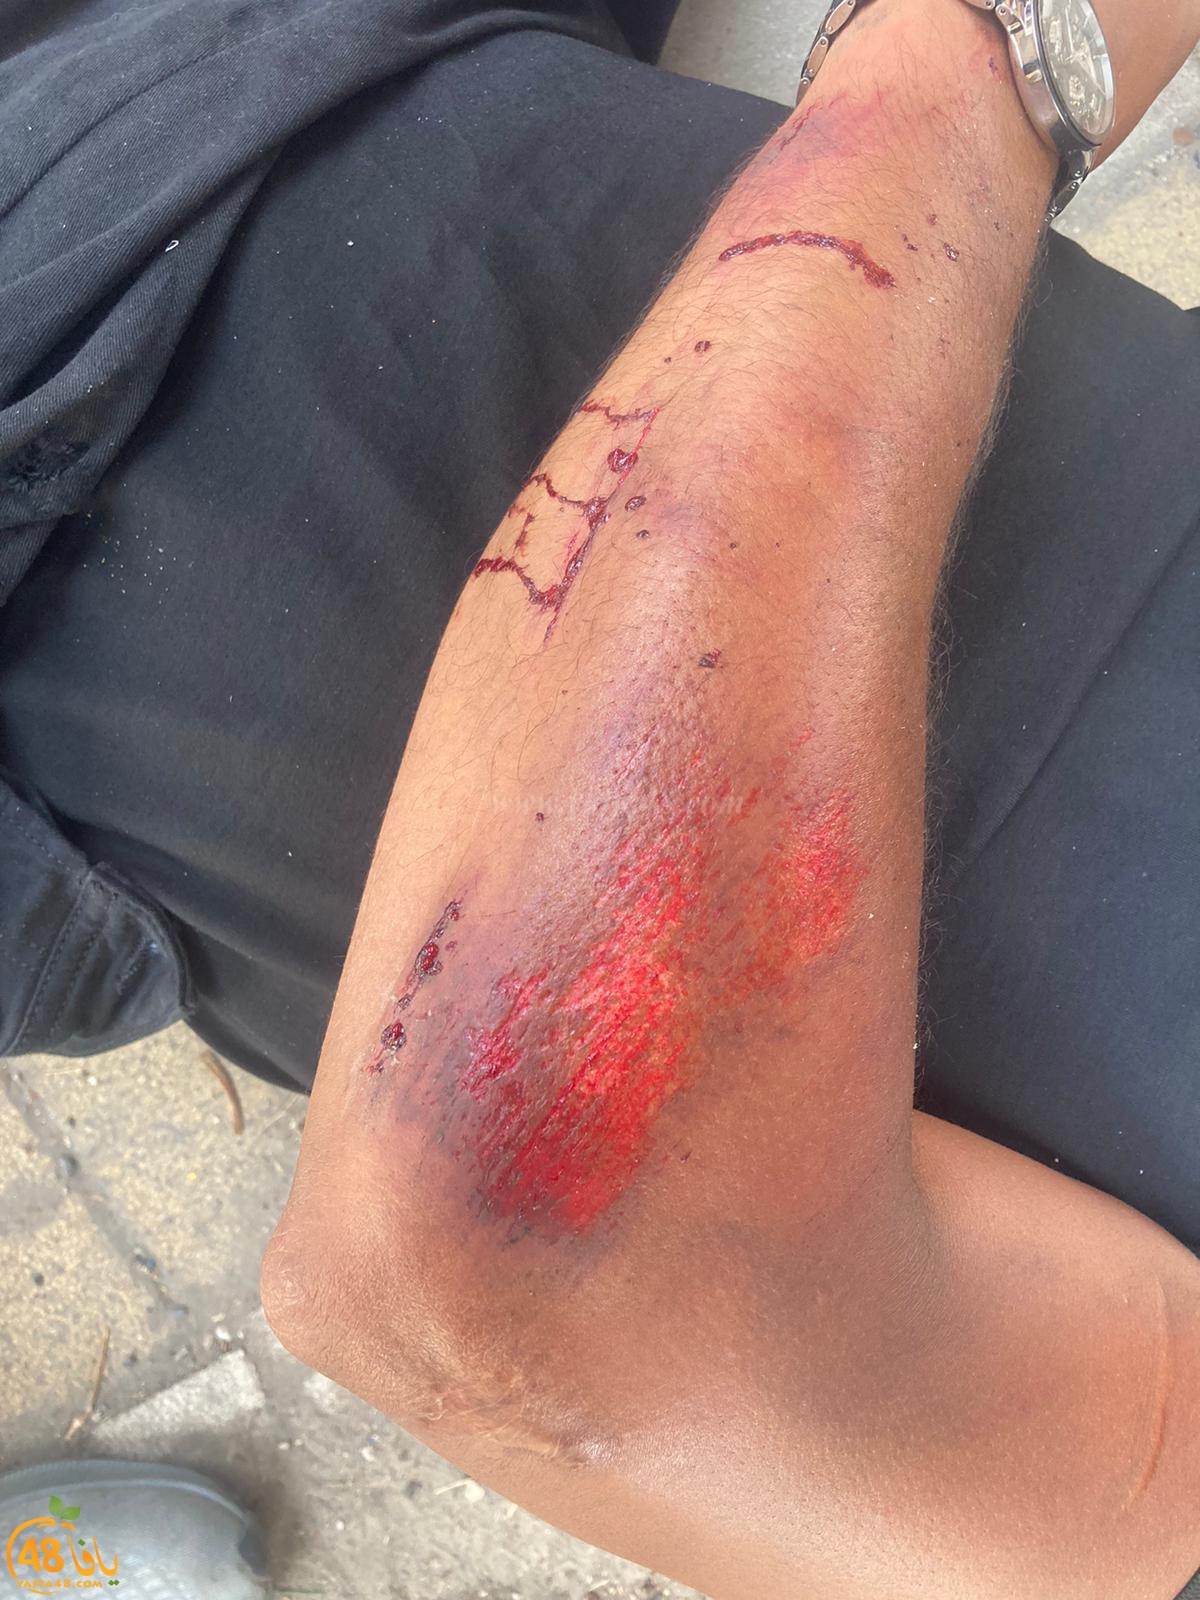  يافا: اصابة متوسطة لراكب دراجة نارية بحادث طرق ذاتي